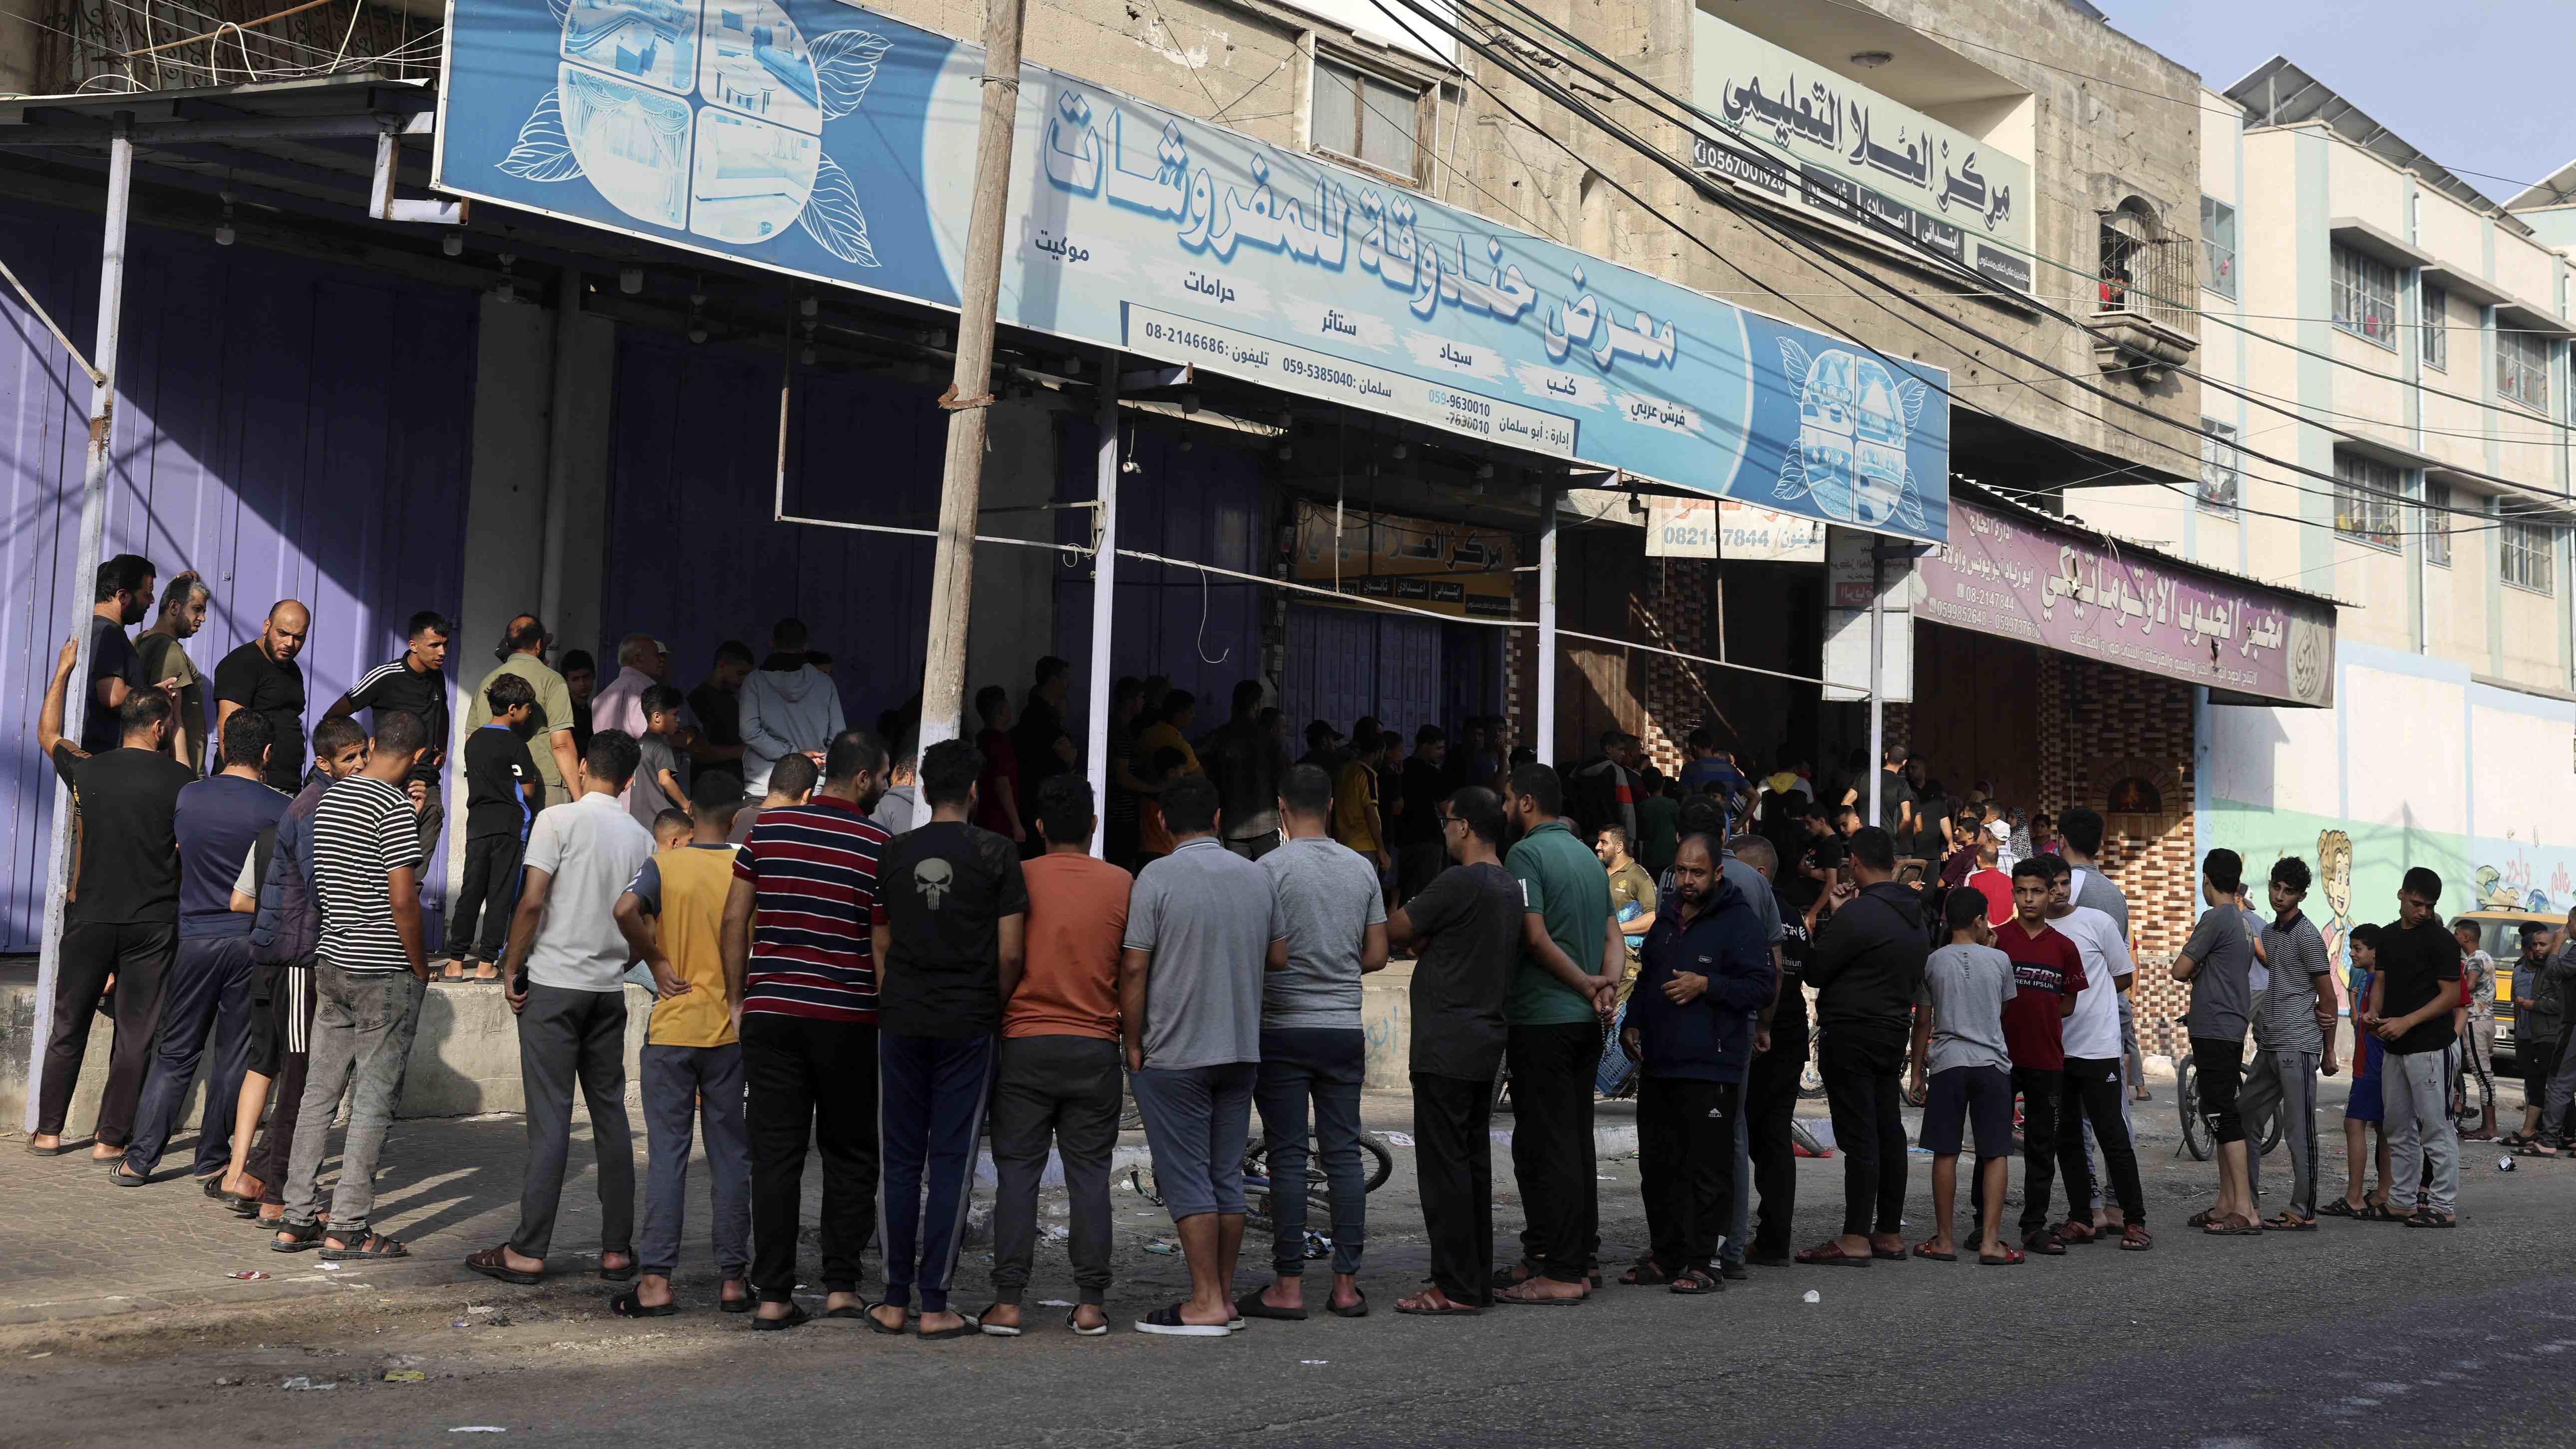 gaza-bakery-22-october-mohammed-abed-afp